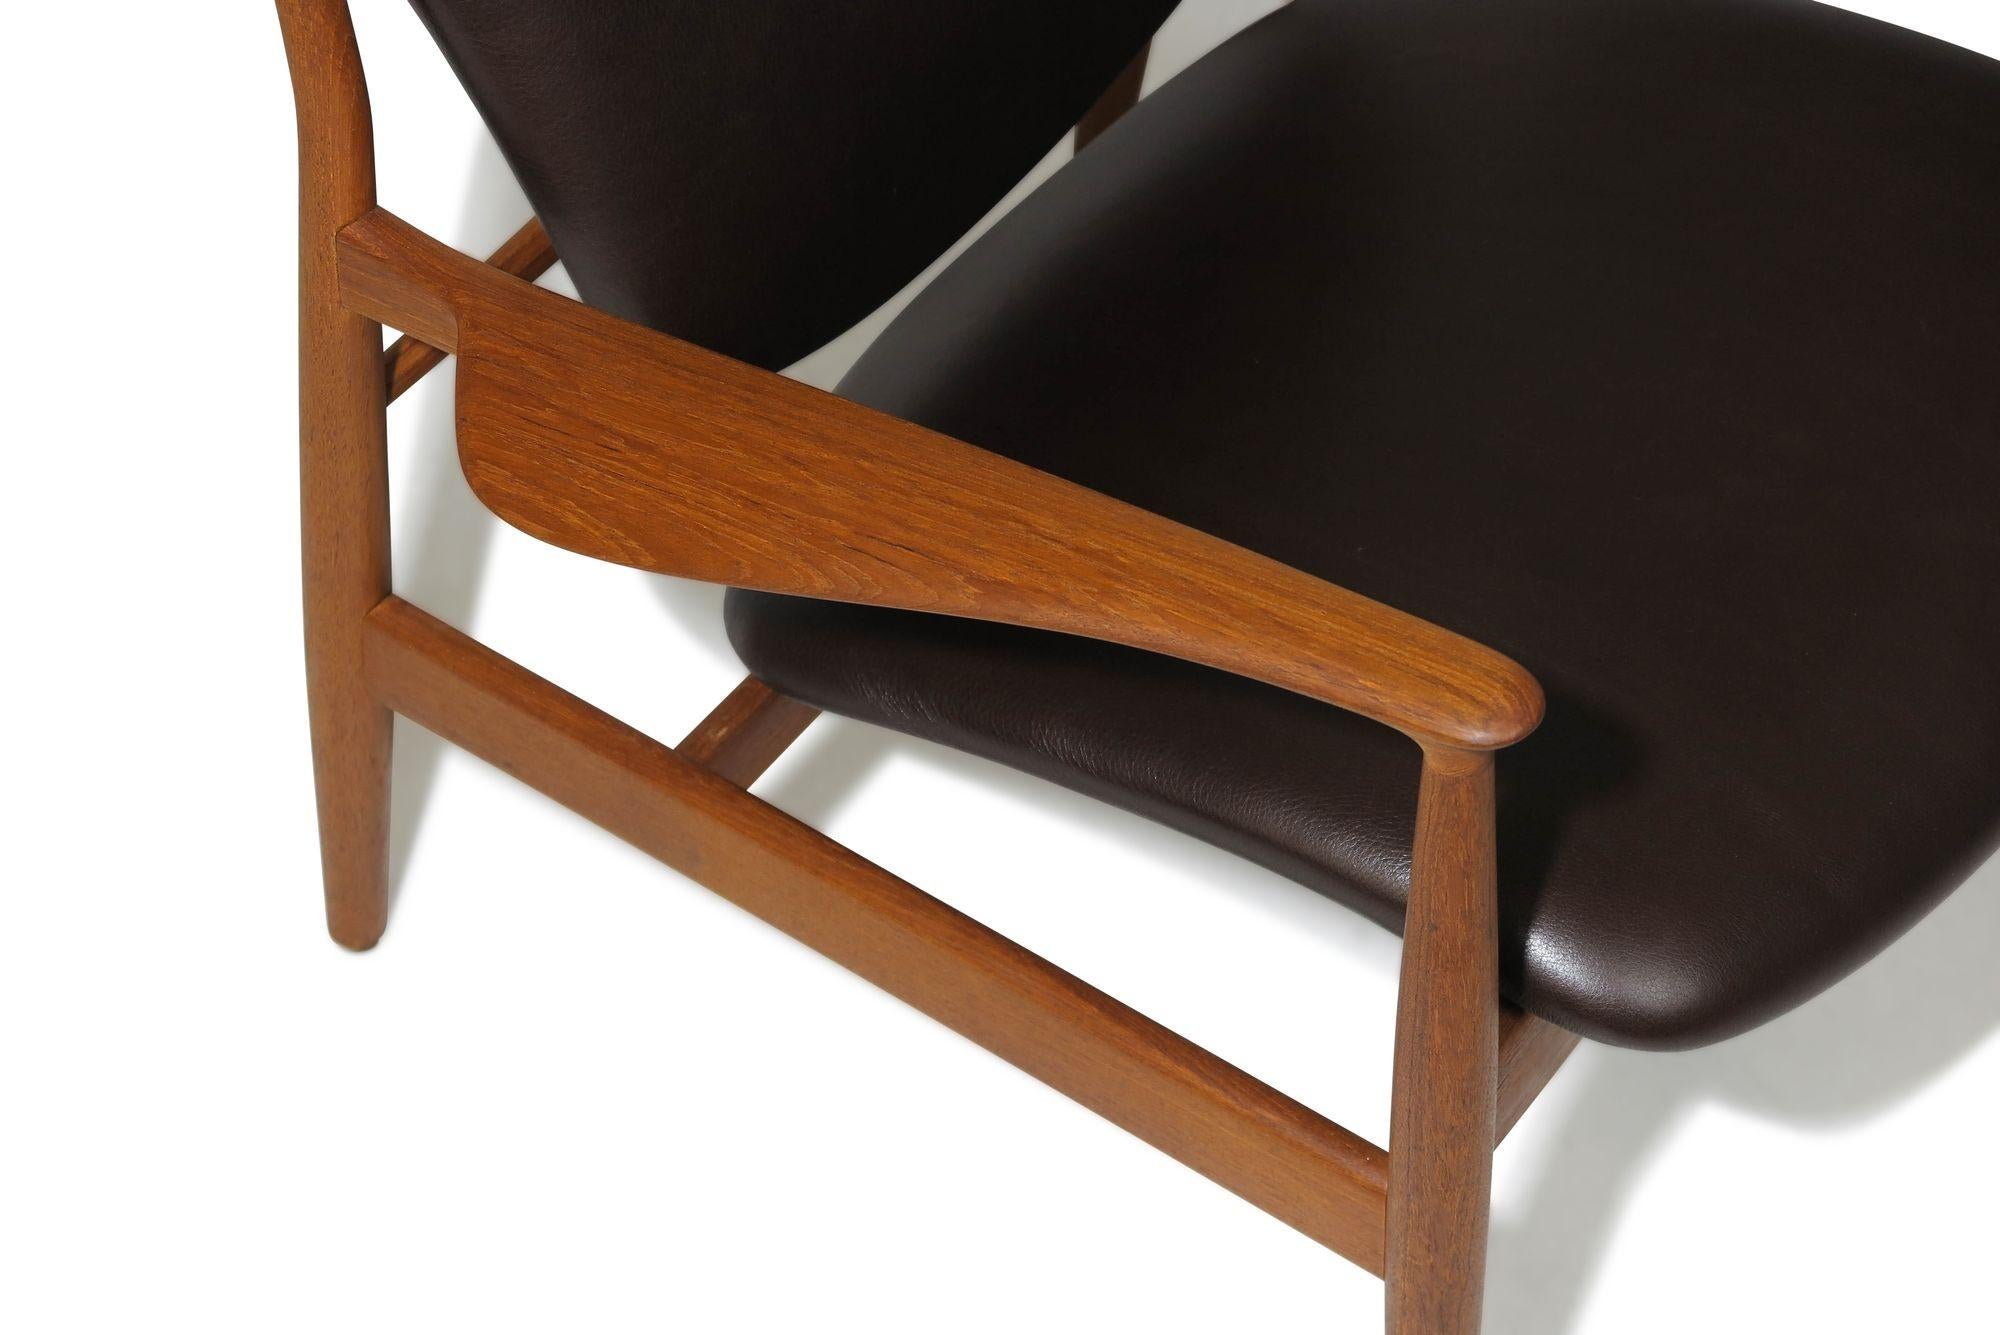 Skandinavischer Loungesessel, entworfen von Finn Juhl für France & Daverkosen, Dänemark. Das Modell FD 136 wird in Handarbeit aus schönem, altem Teakholz gefertigt. Der Stuhl verfügt über elegant geschnitzte Armlehnen und eine anmutig geschwungene